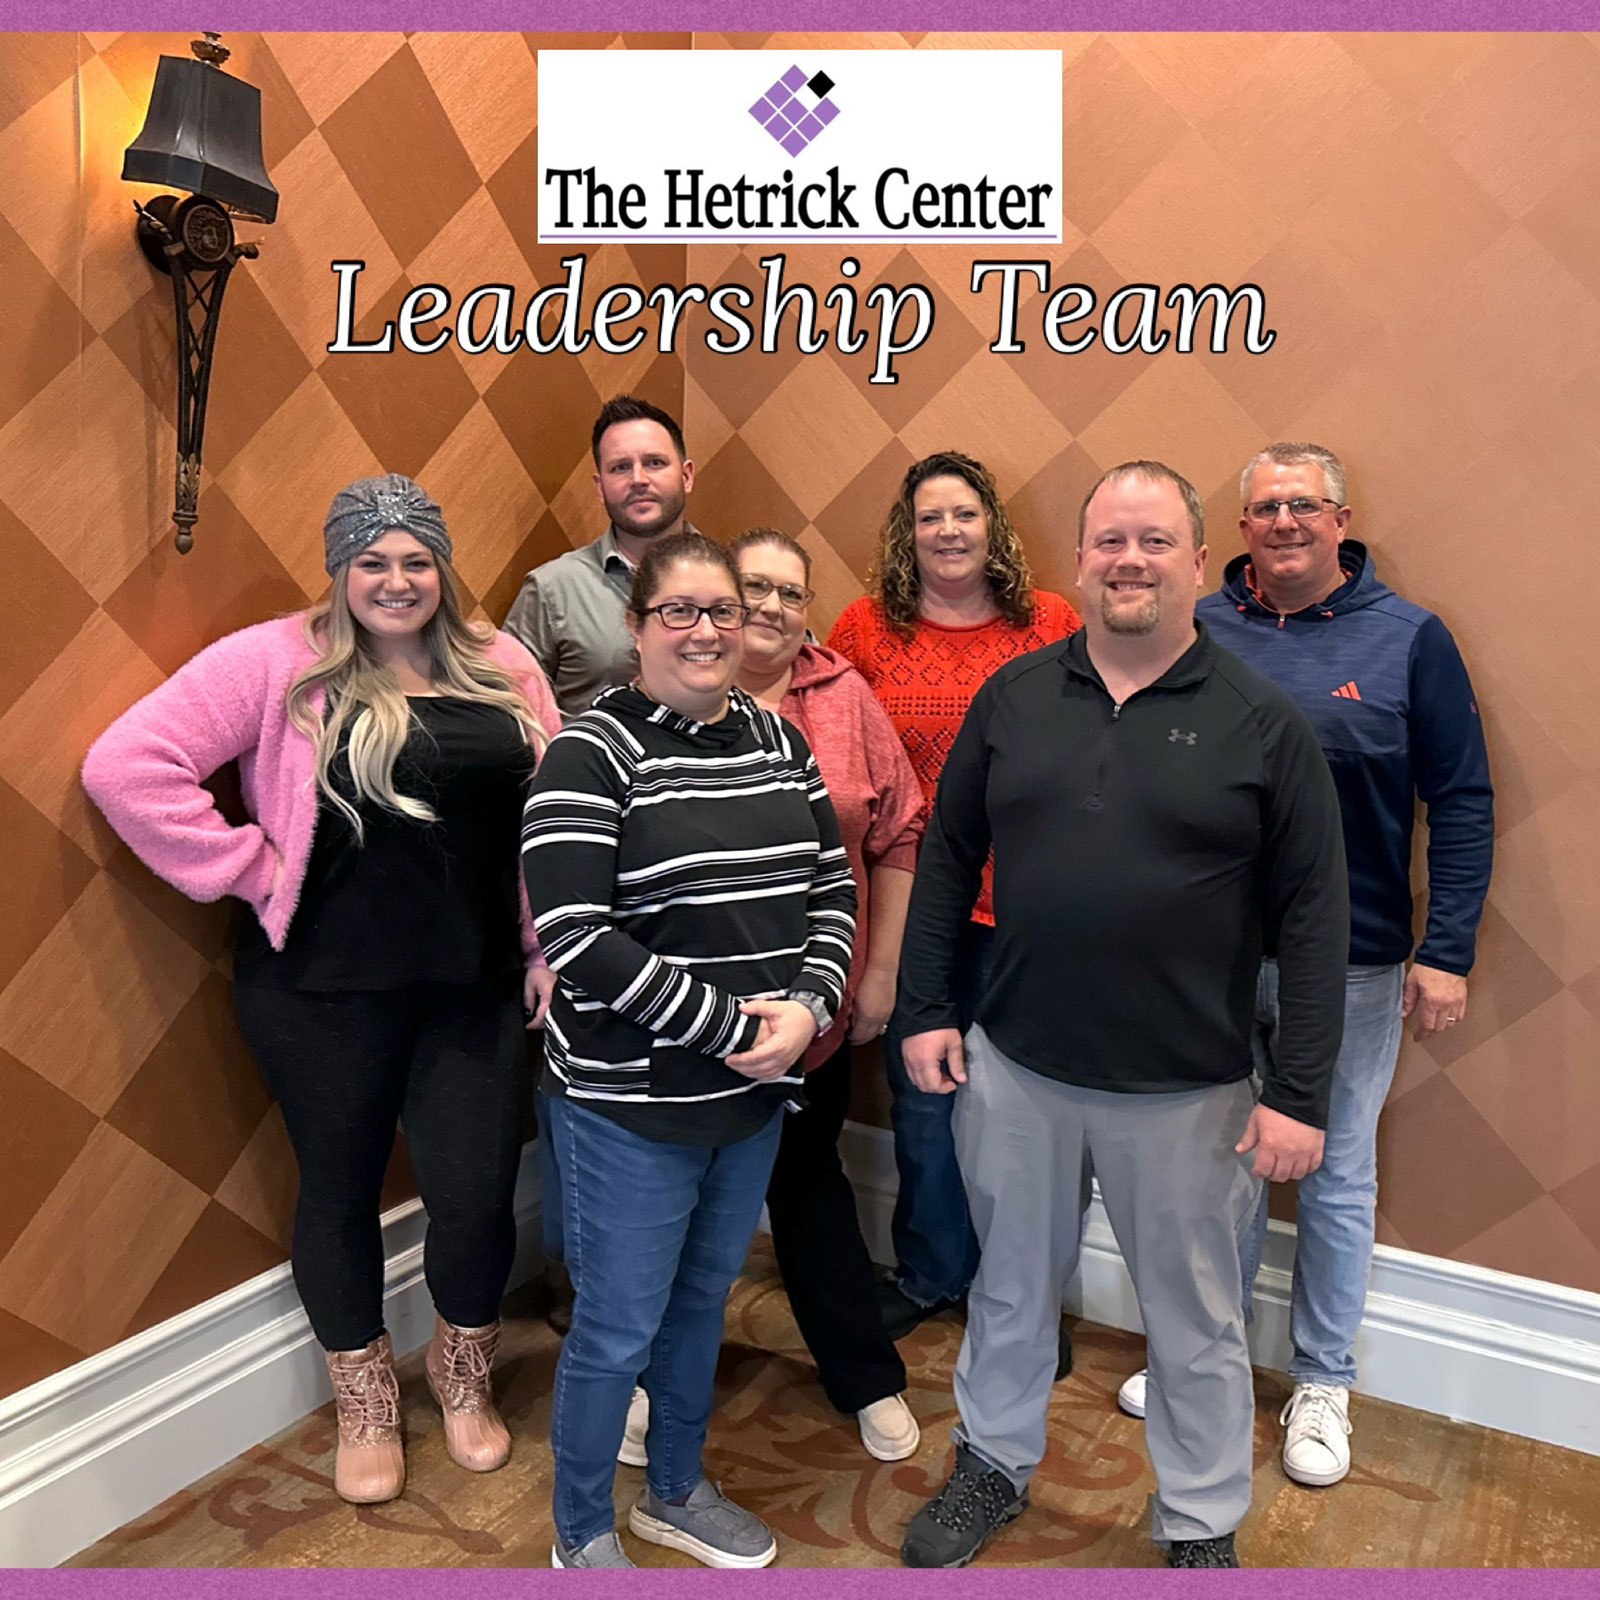 The Hetrick Center Leadership Team